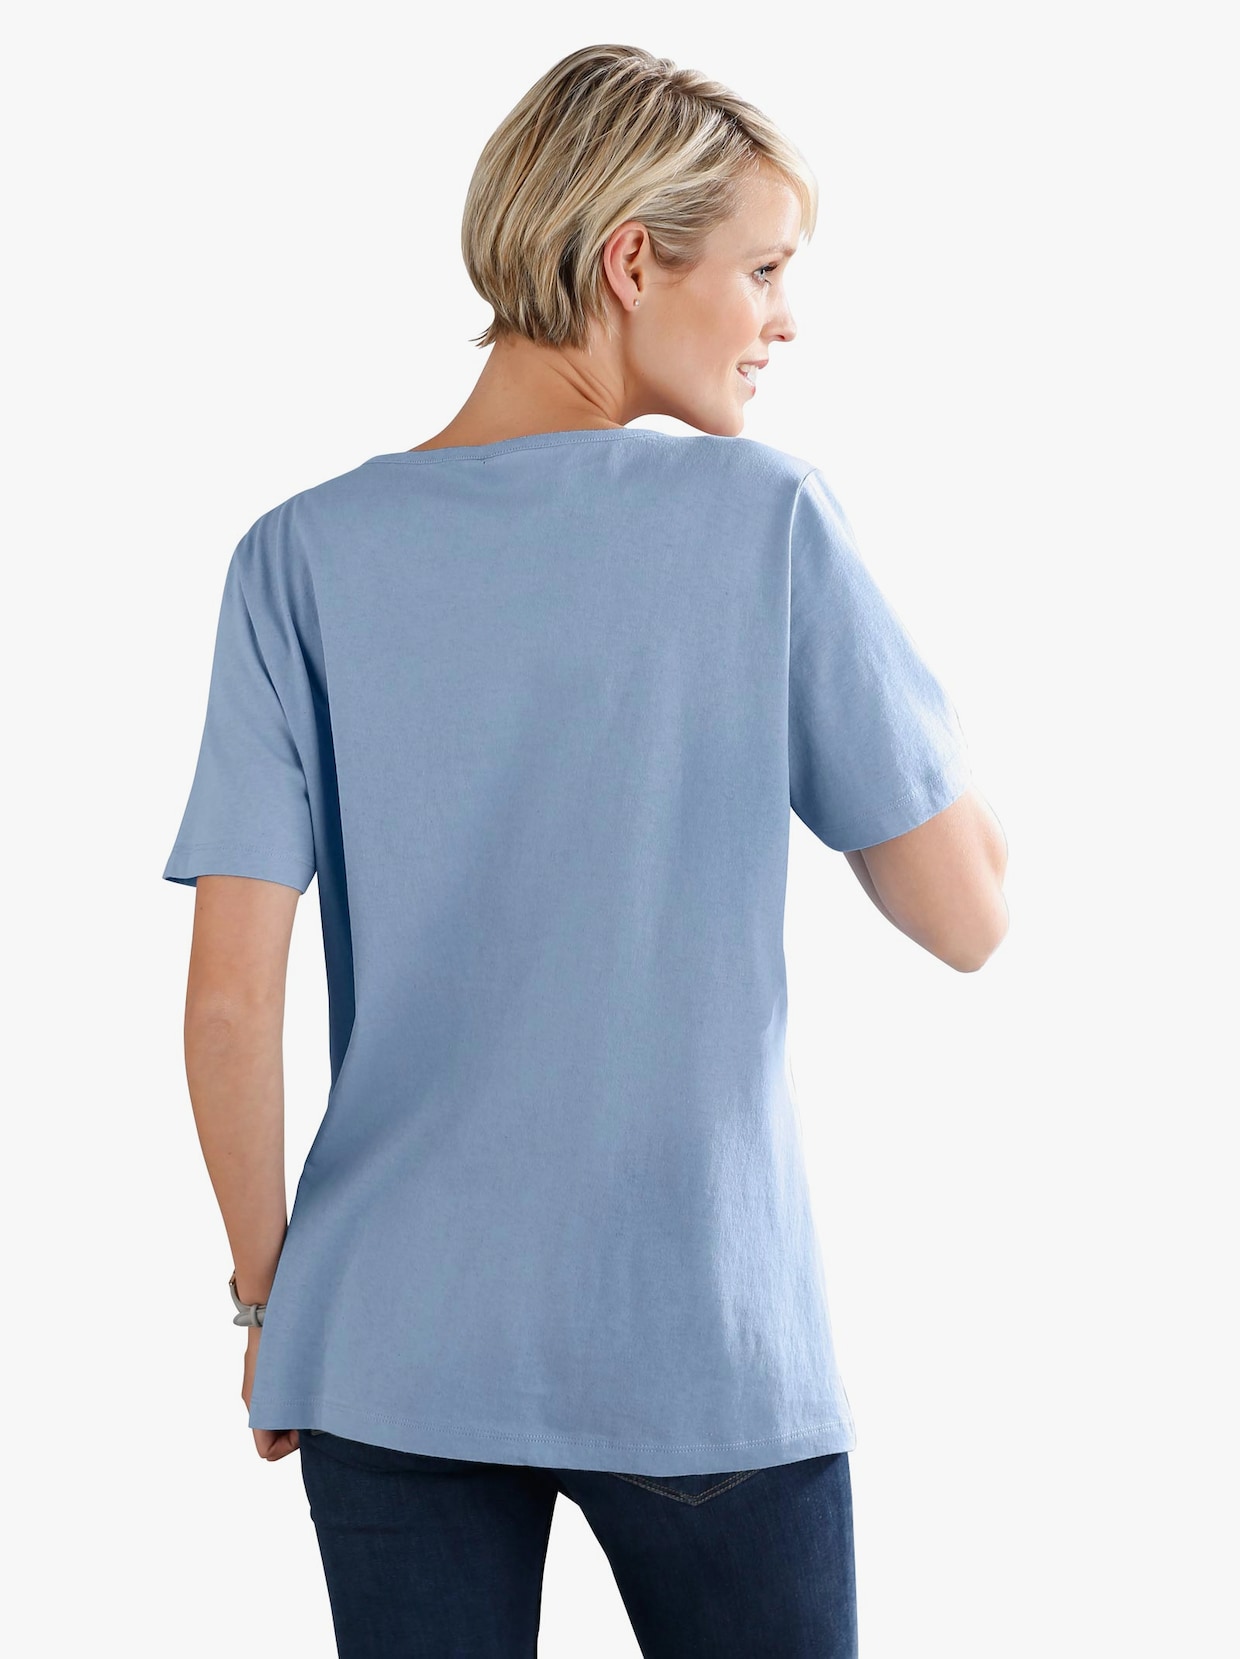 Tričko s krátkým rukávem - modrá-potisk